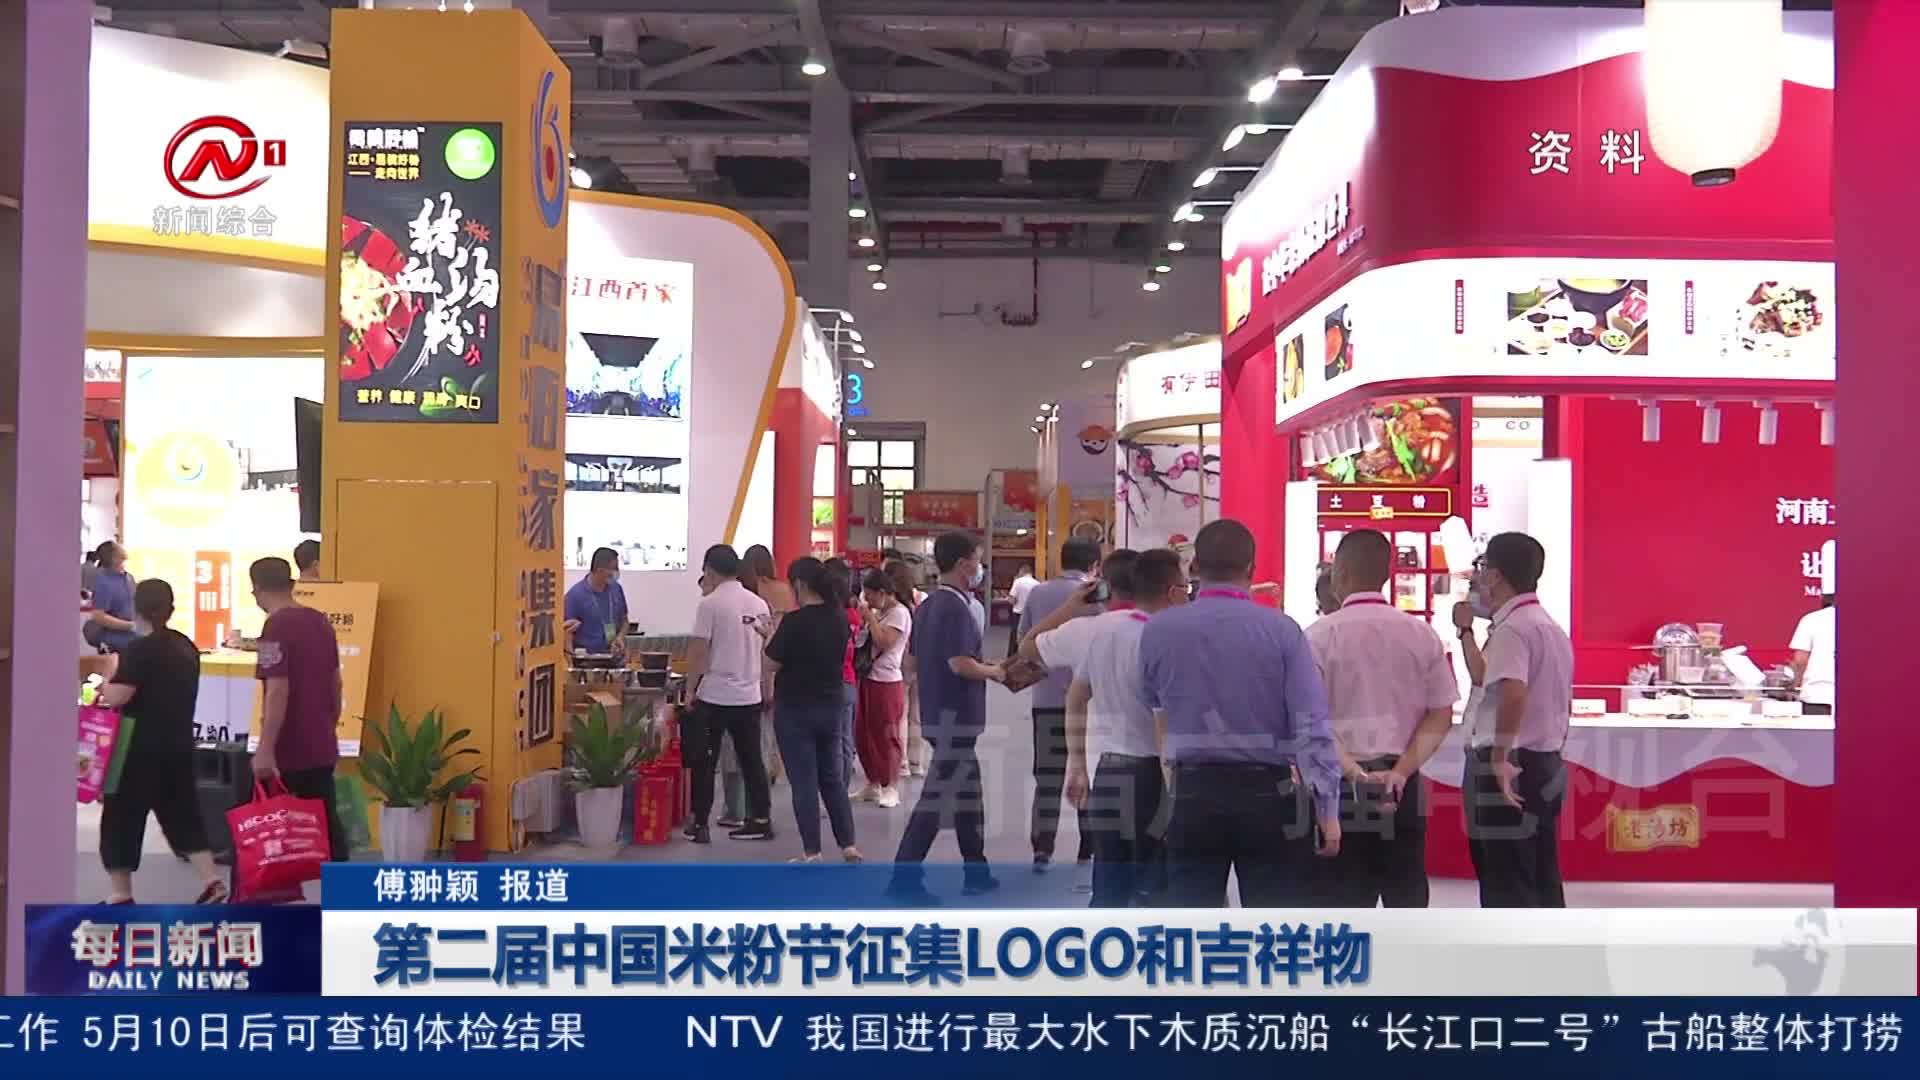 第二届中国米粉节征集LOGO和吉祥物